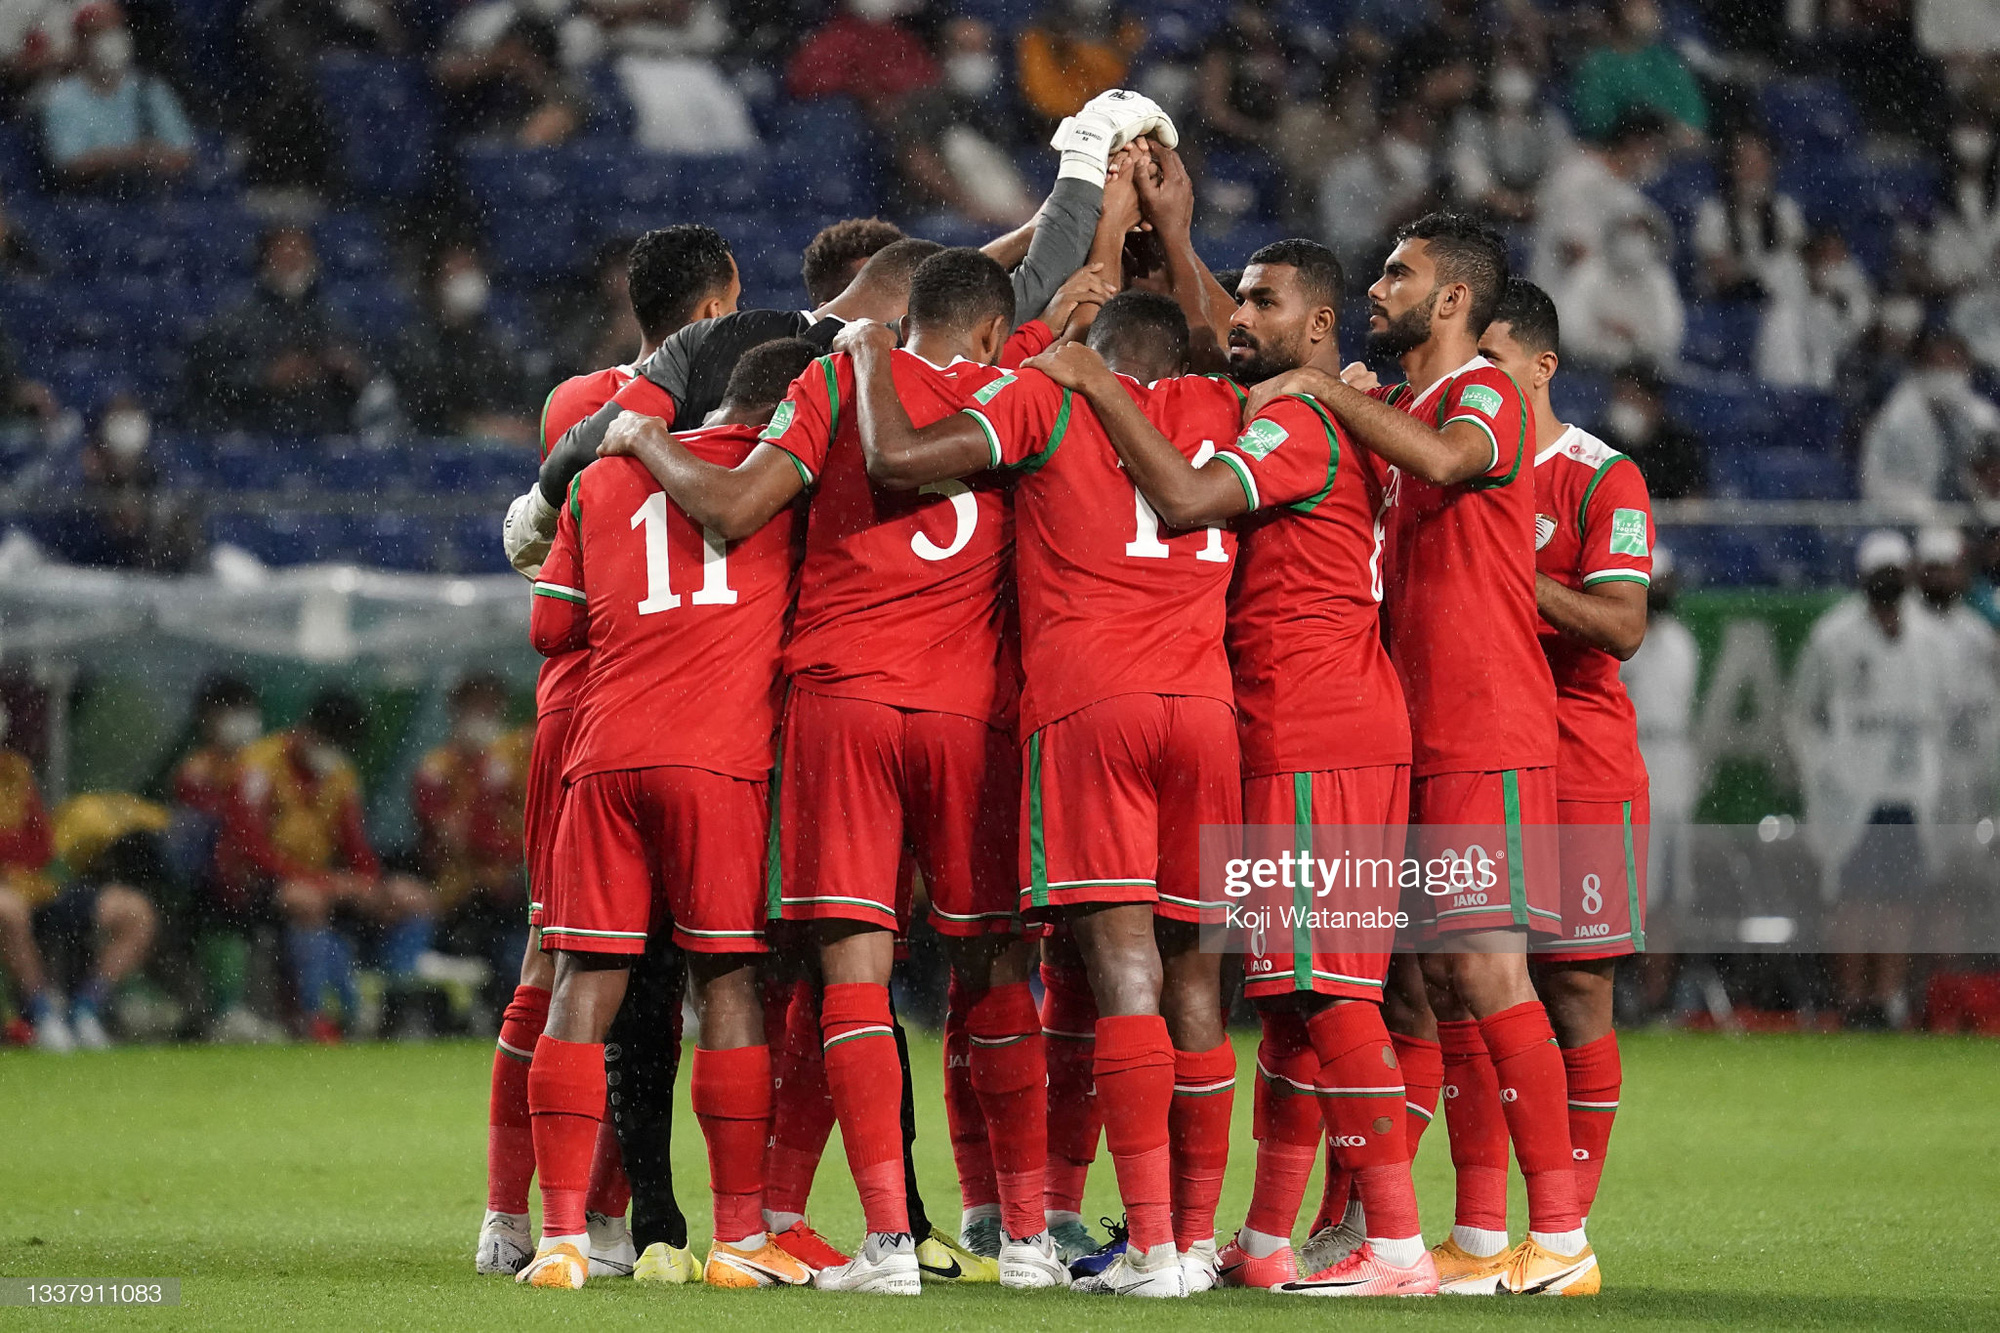 Tuyển Oman thắng 7-1 ở trận giao hữu, thị uy sức mạnh với tuyển Việt Nam - Ảnh 1.